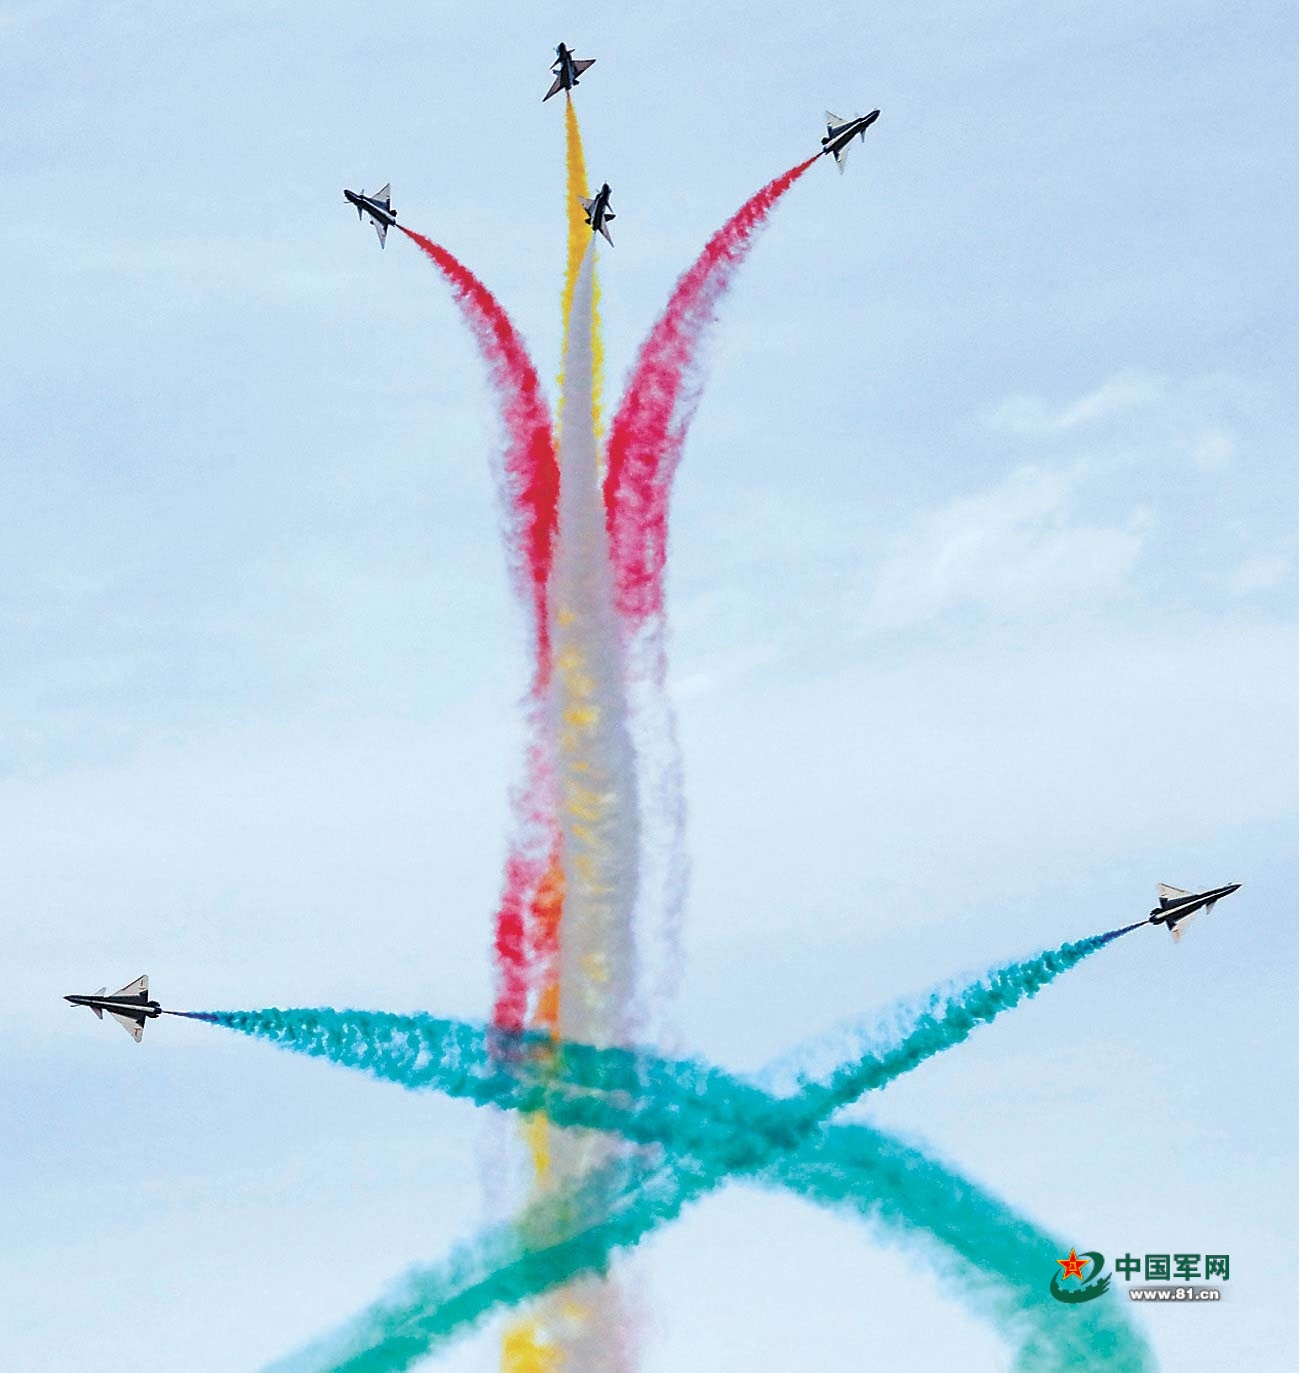 空军八一飞行表演队精彩亮相第二届沙特国际防务展